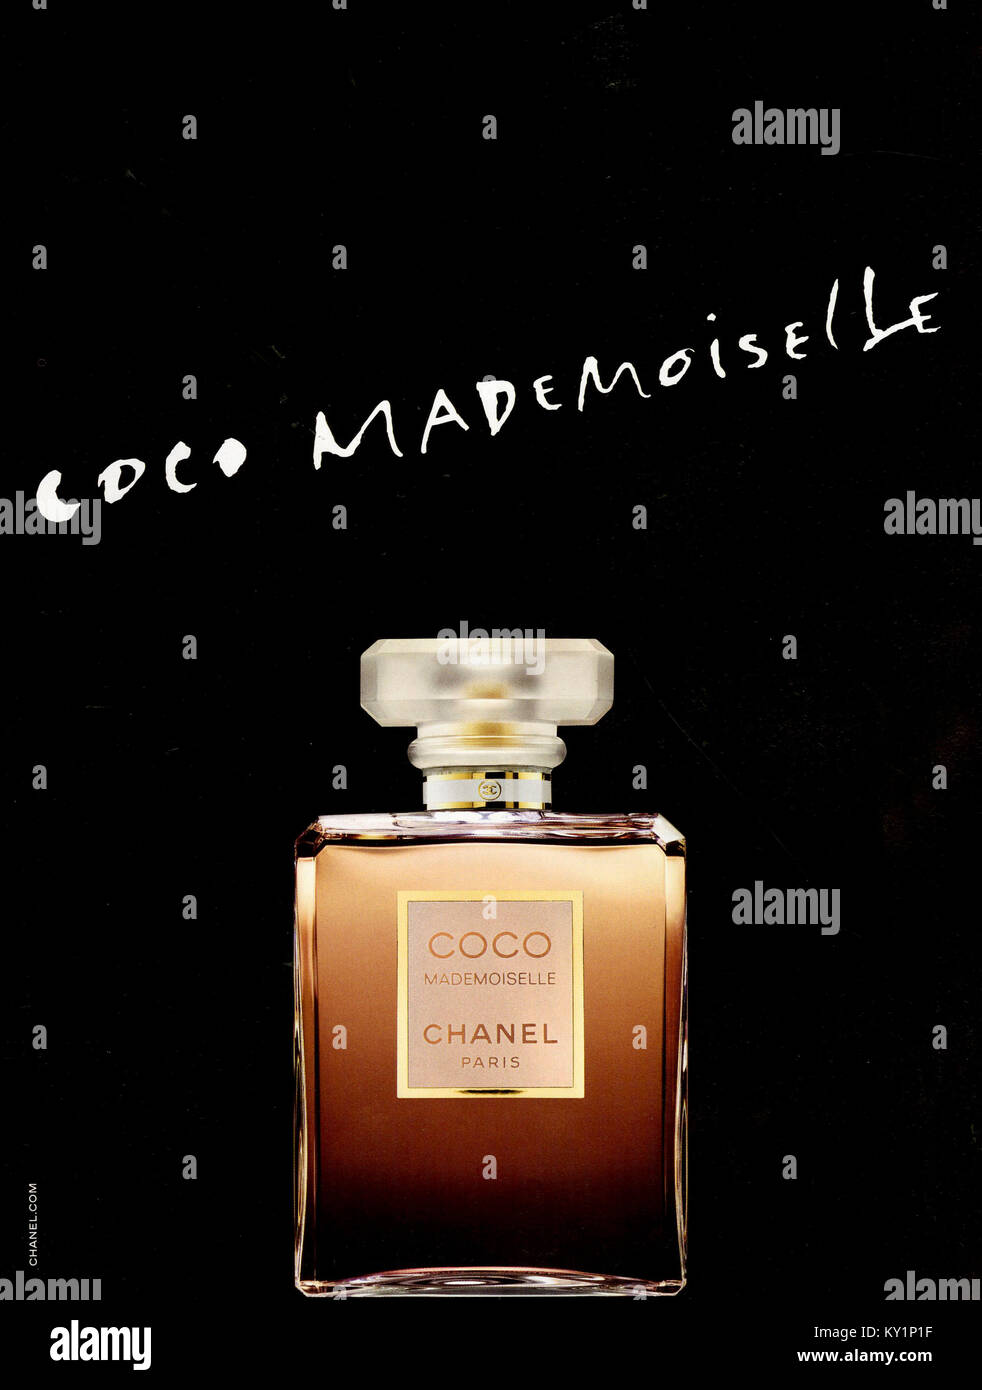 coco chanel perfume picture